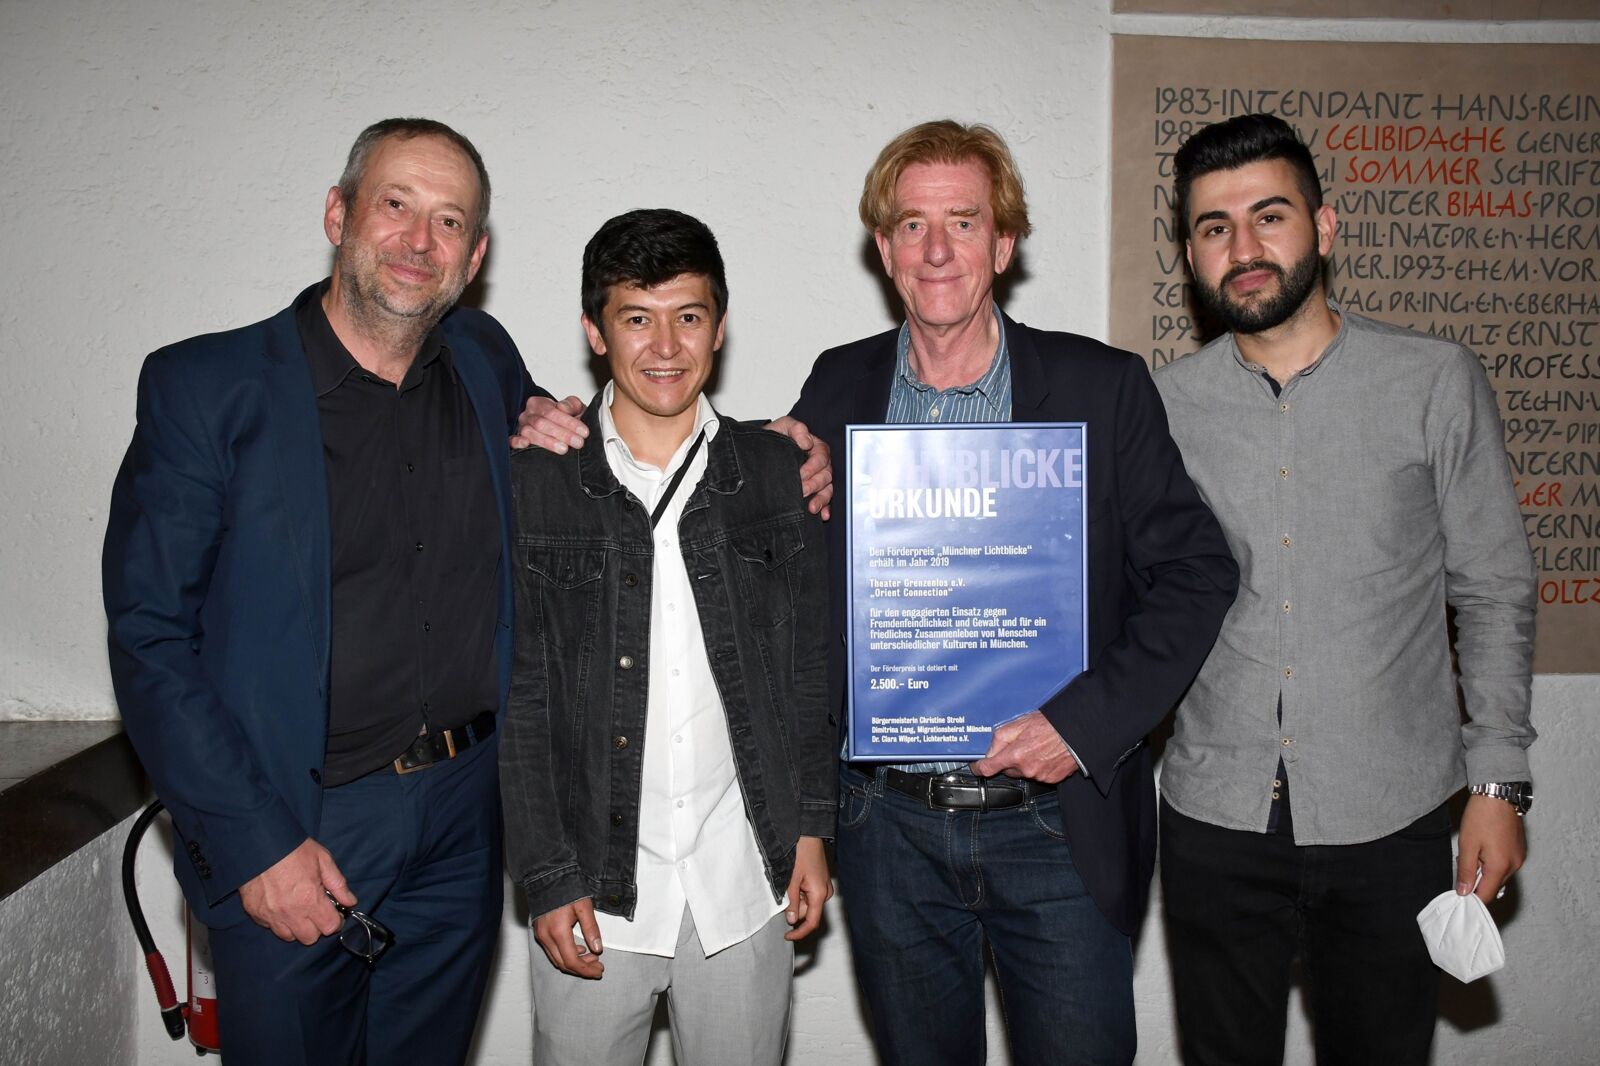 Hier sieht man Julian Franke-Ruthel, Abdul Hakim Rezai, Viktor Schenkel und Hani Ameen Samoo mit der Urkunde für die Auszeichnung "Münchner Lichtblicke".